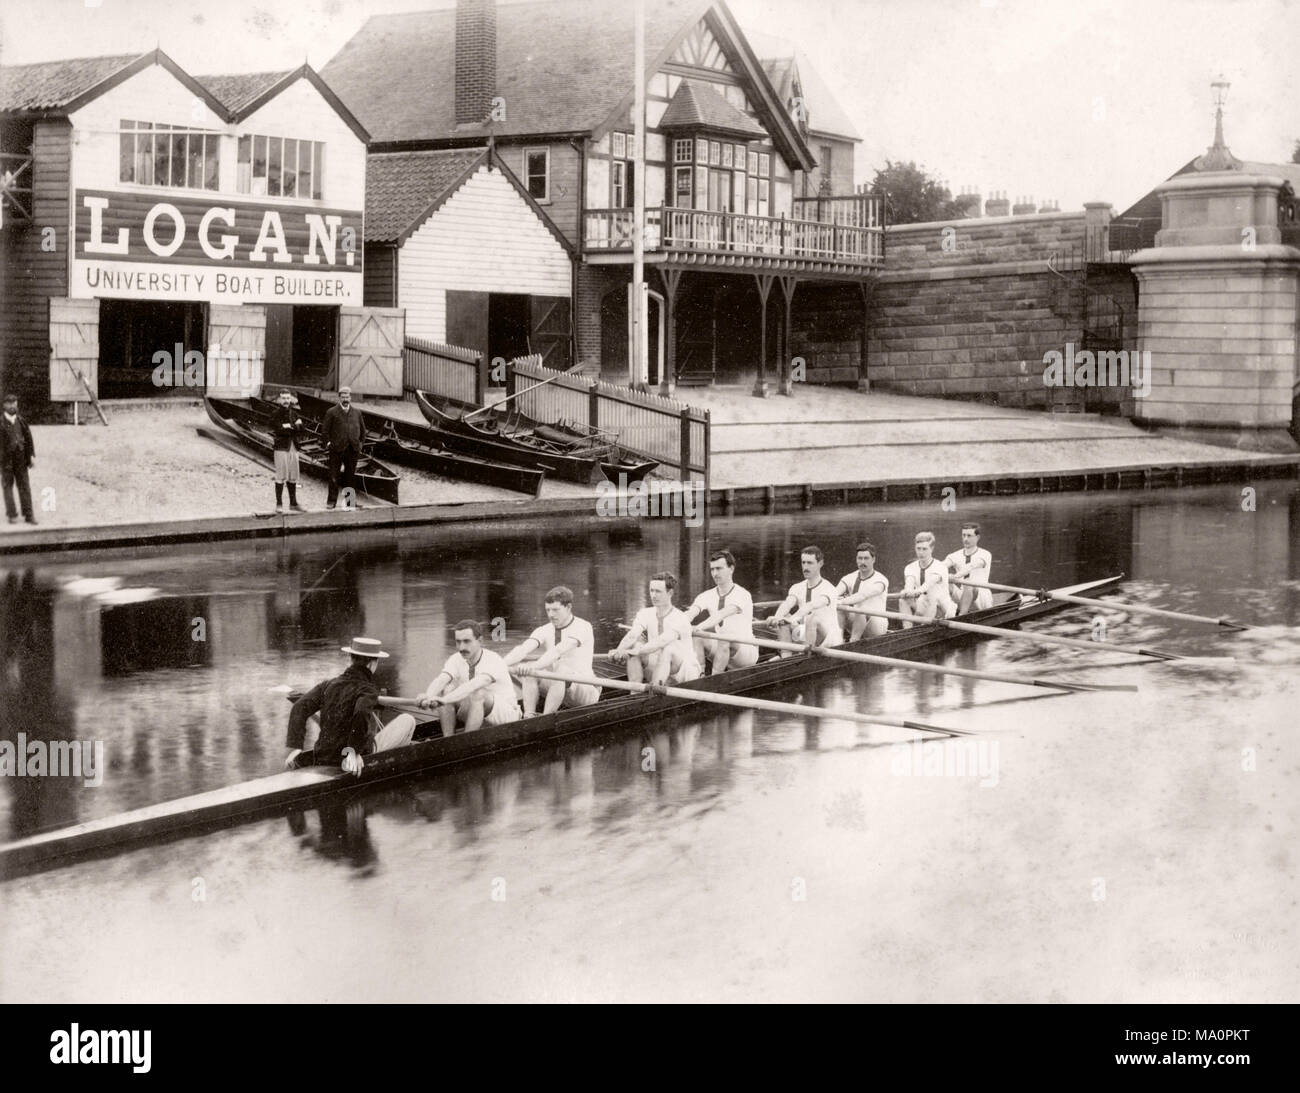 19e siècle - photographie vintage Lady Margaret Boat Club, l'équipe d'aviron, Cambridge, 1890 Banque D'Images